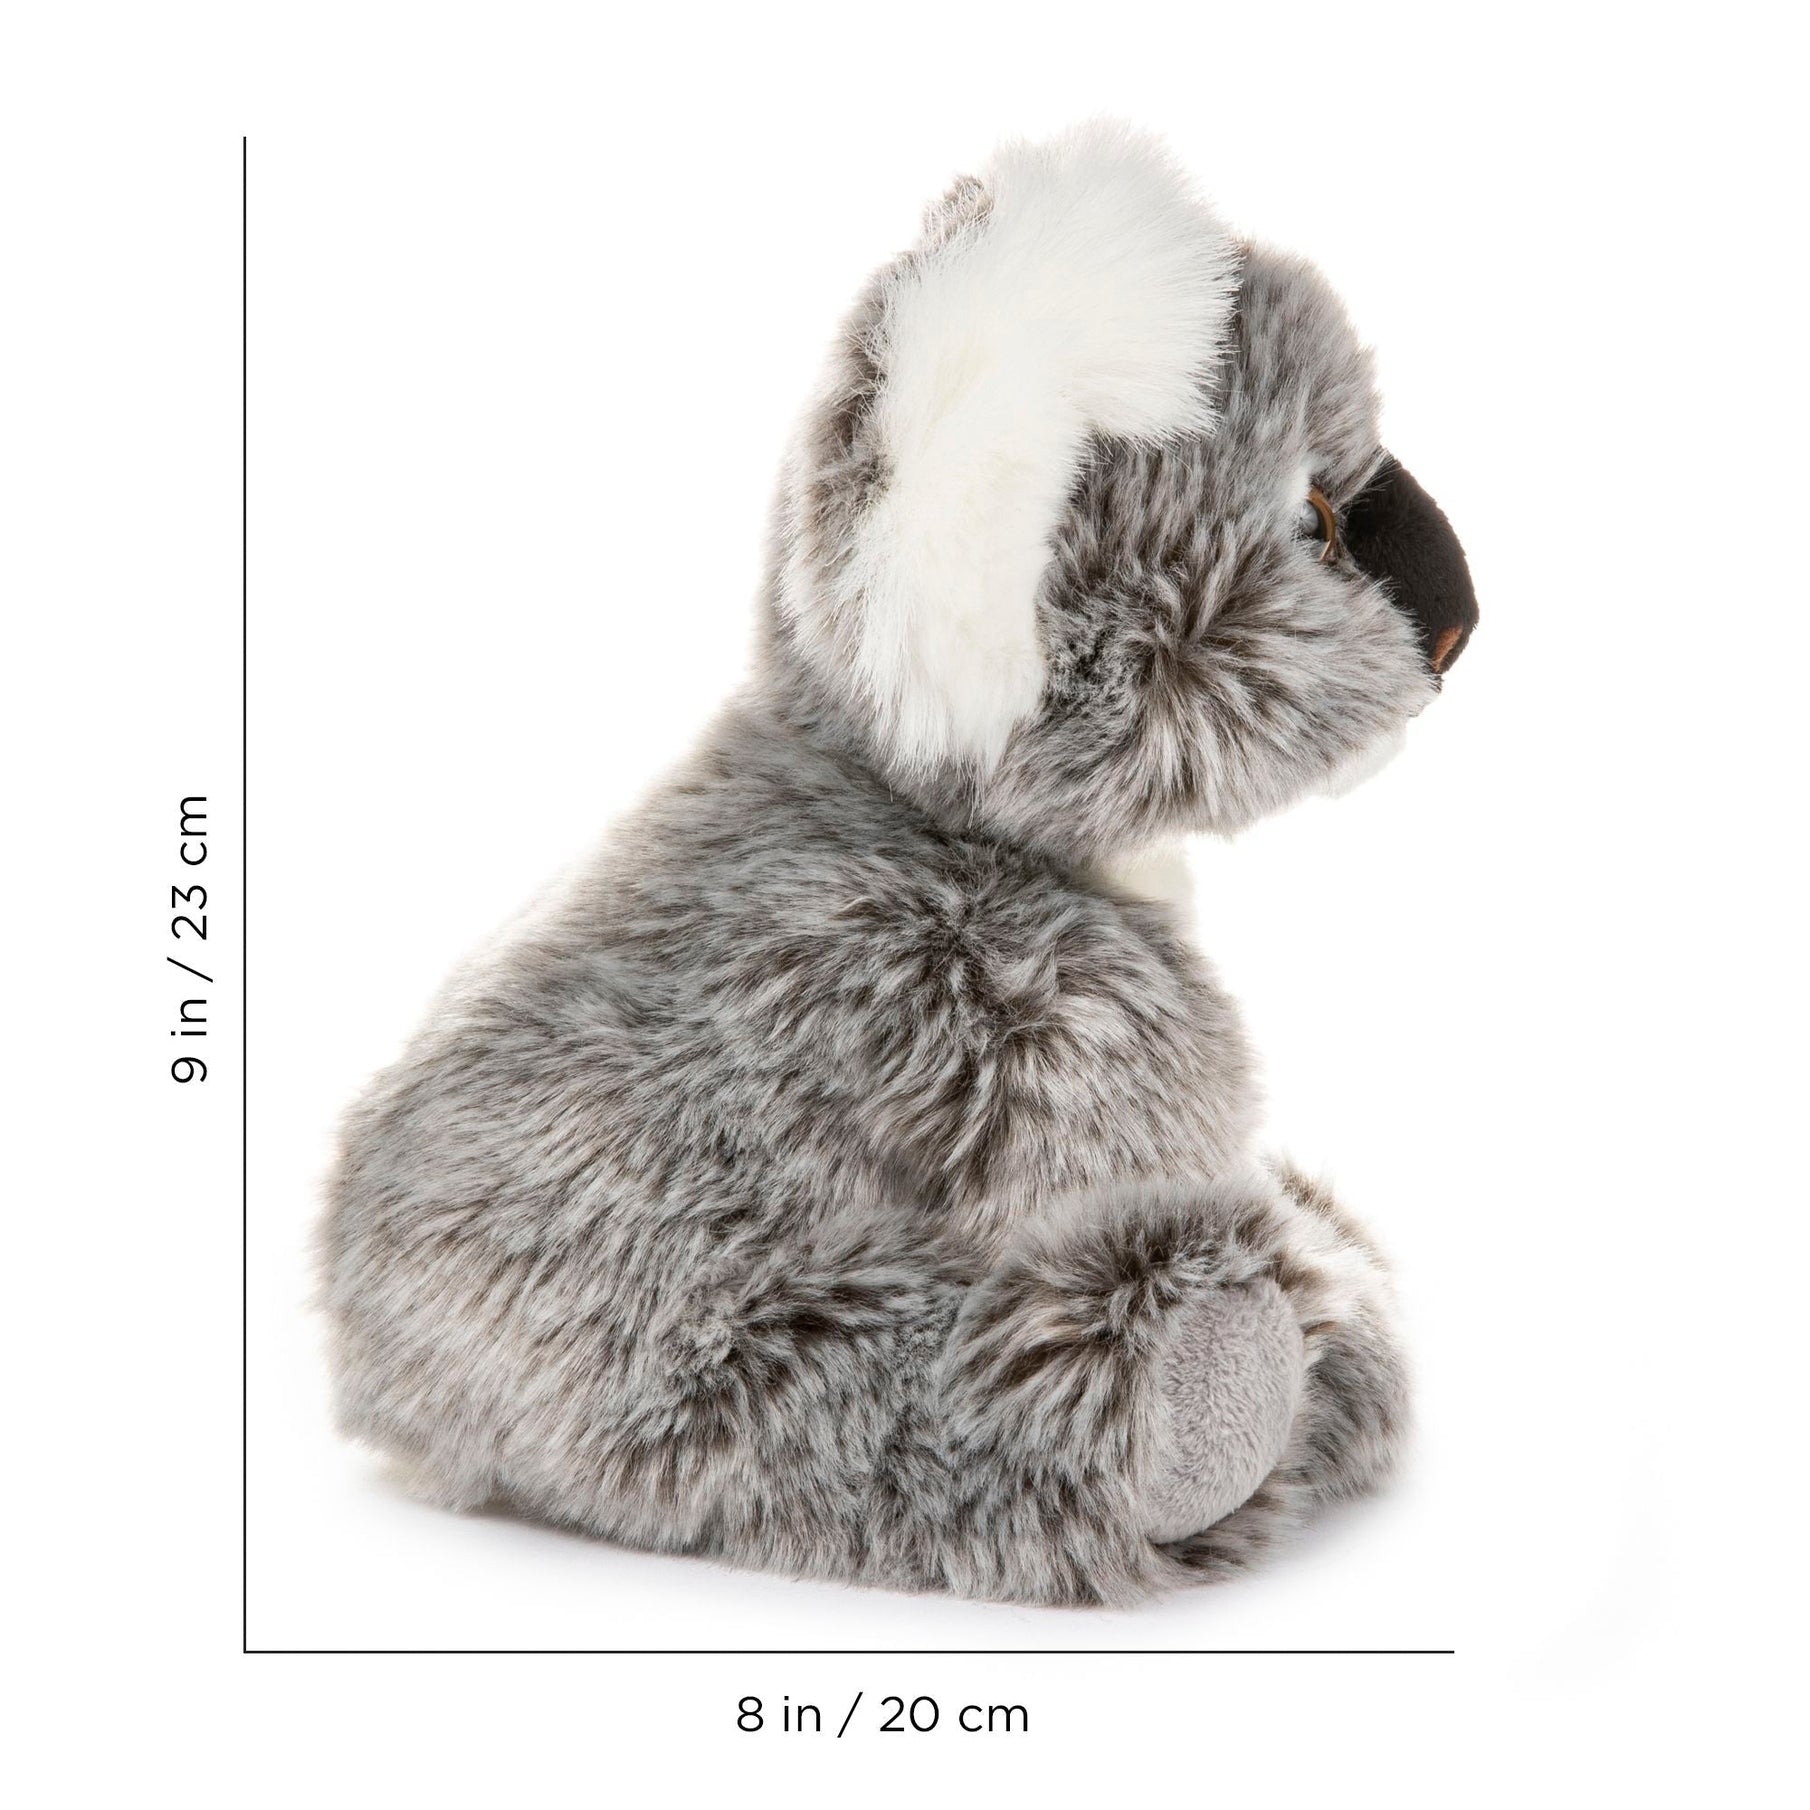 Stuffed Animal - Koala